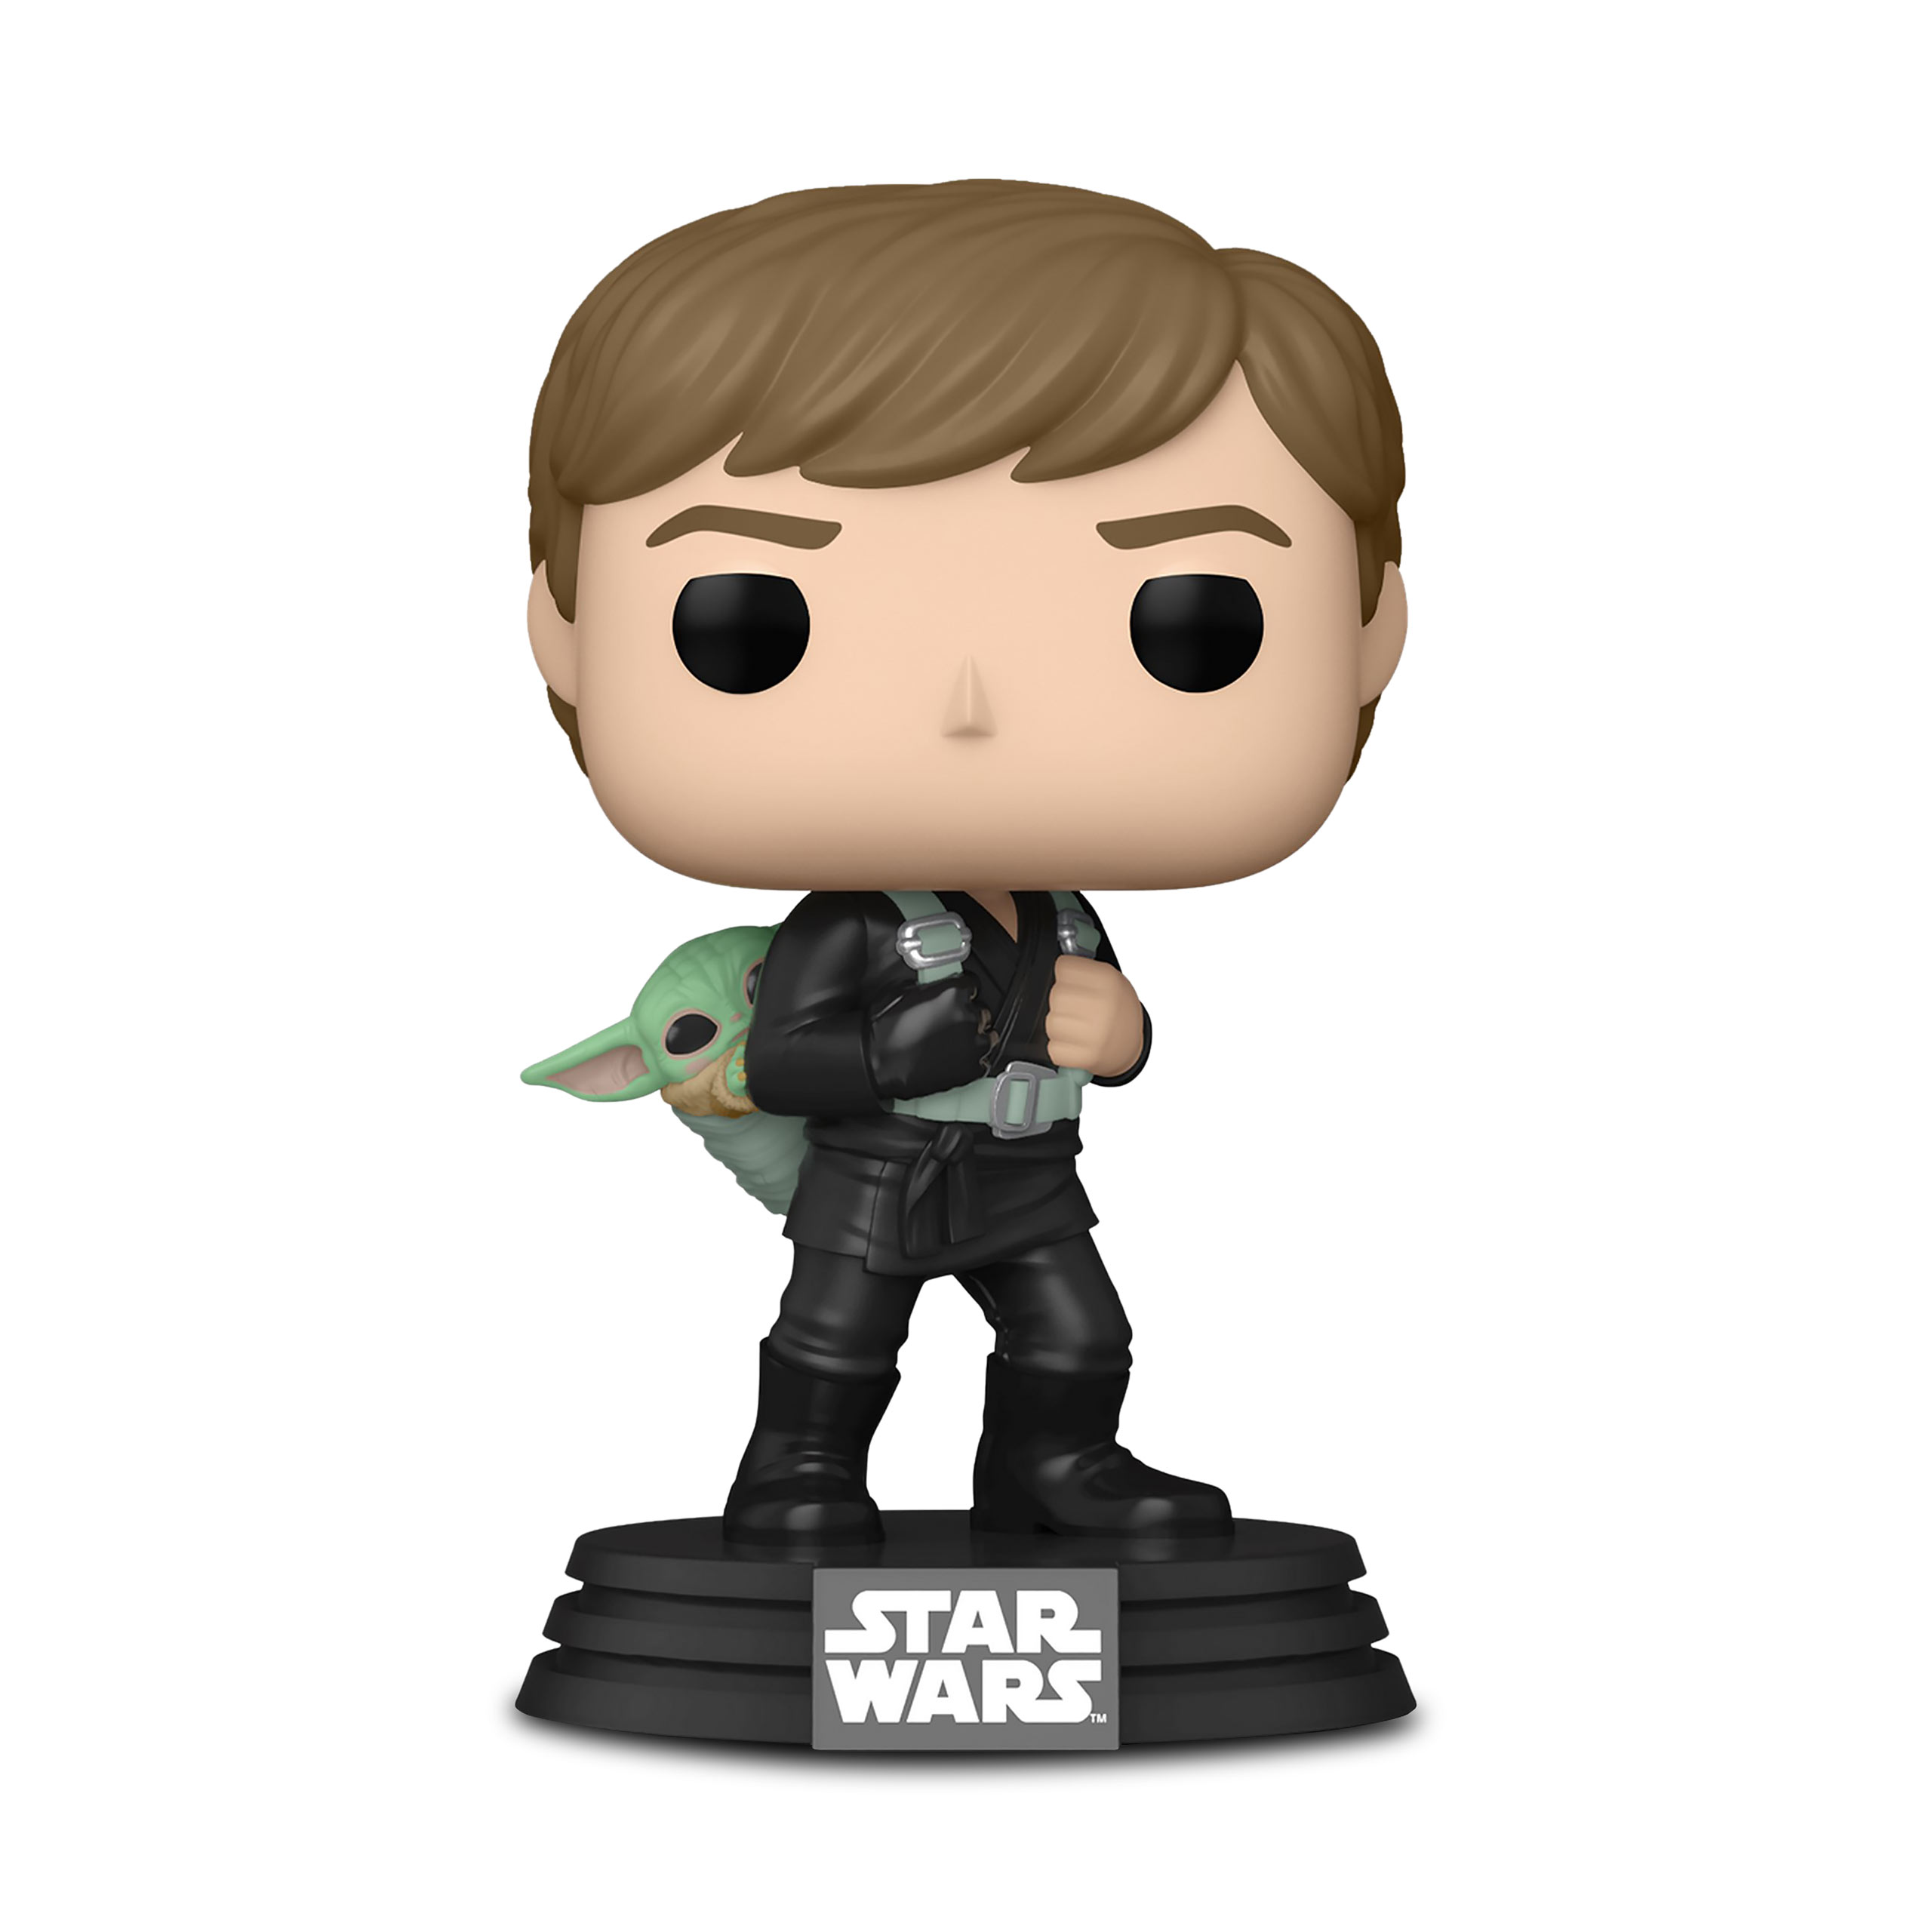 Star Wars - Luke Skywalker with Grogu Funko Pop Bobblehead Figure